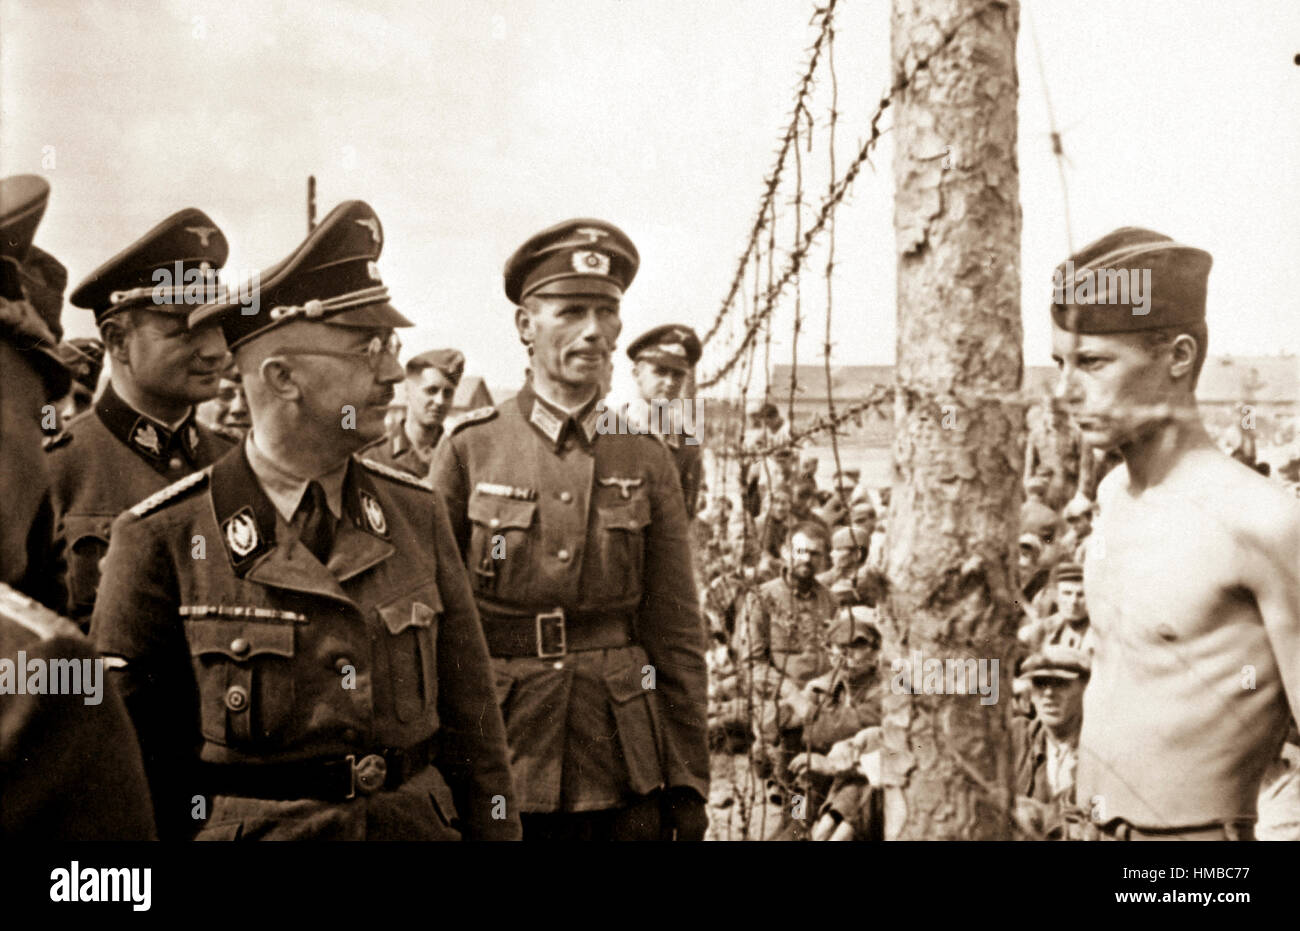 Himmler besichtigt die Gefangenenlager in Russland.  Heinrich Himmler inspects a prisoner-of-war camp in Russia.  Ca. 1940-41. Stock Photo